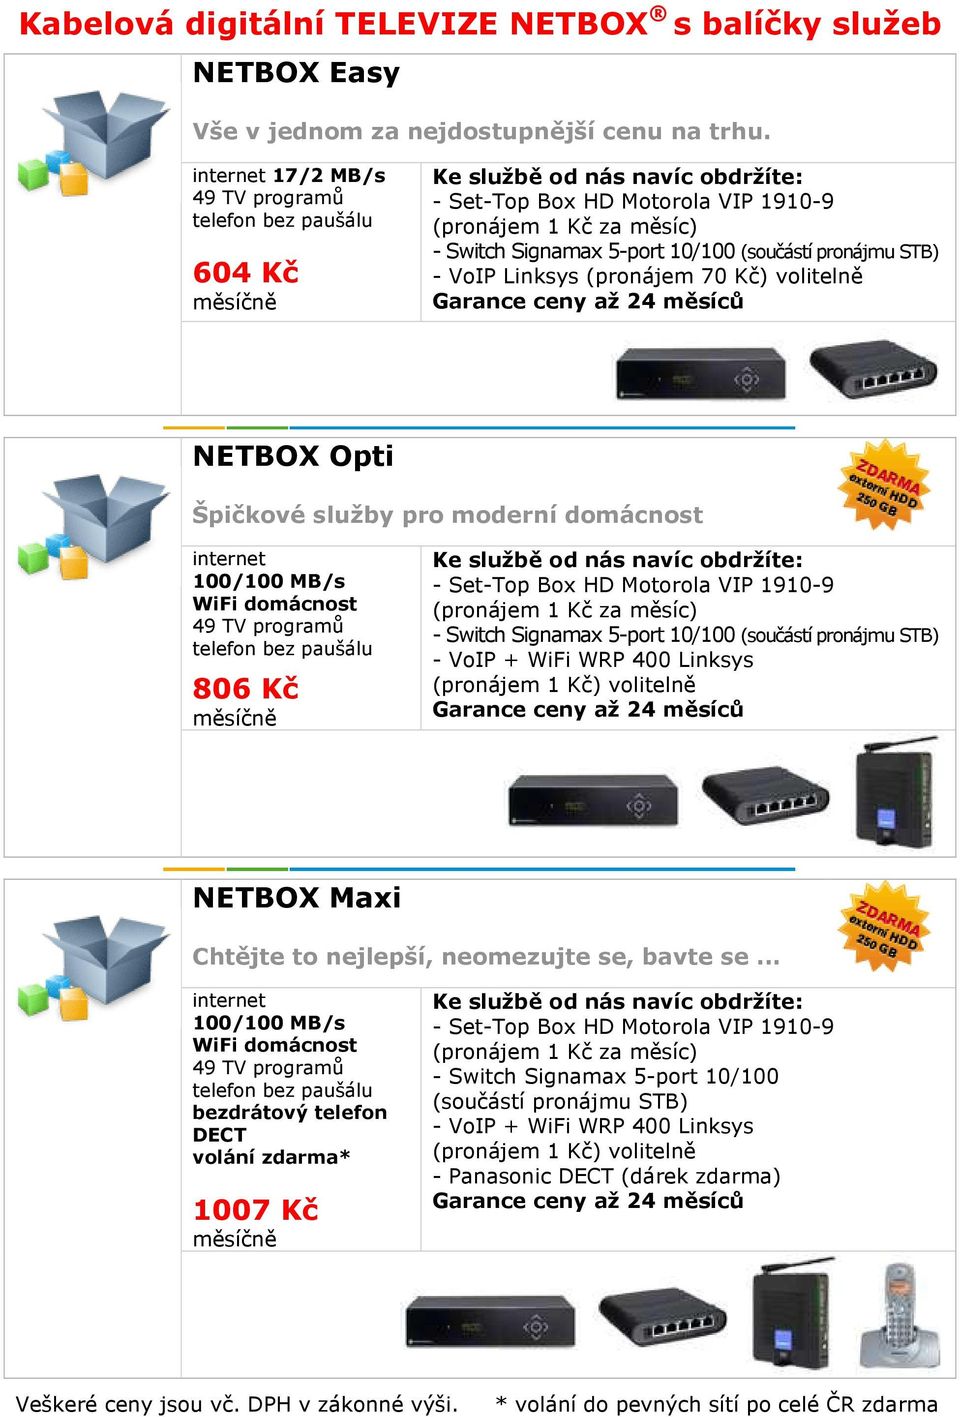 WiFi domácnost 806 Kč - Switch Signamax 5-port 10/100 (součástí pronájmu STB) - VoIP + WiFi WRP 400 Linksys (pronájem 1 Kč) volitelně NETBOX Maxi Chtějte to nejlepší, neomezujte se, bavte se.